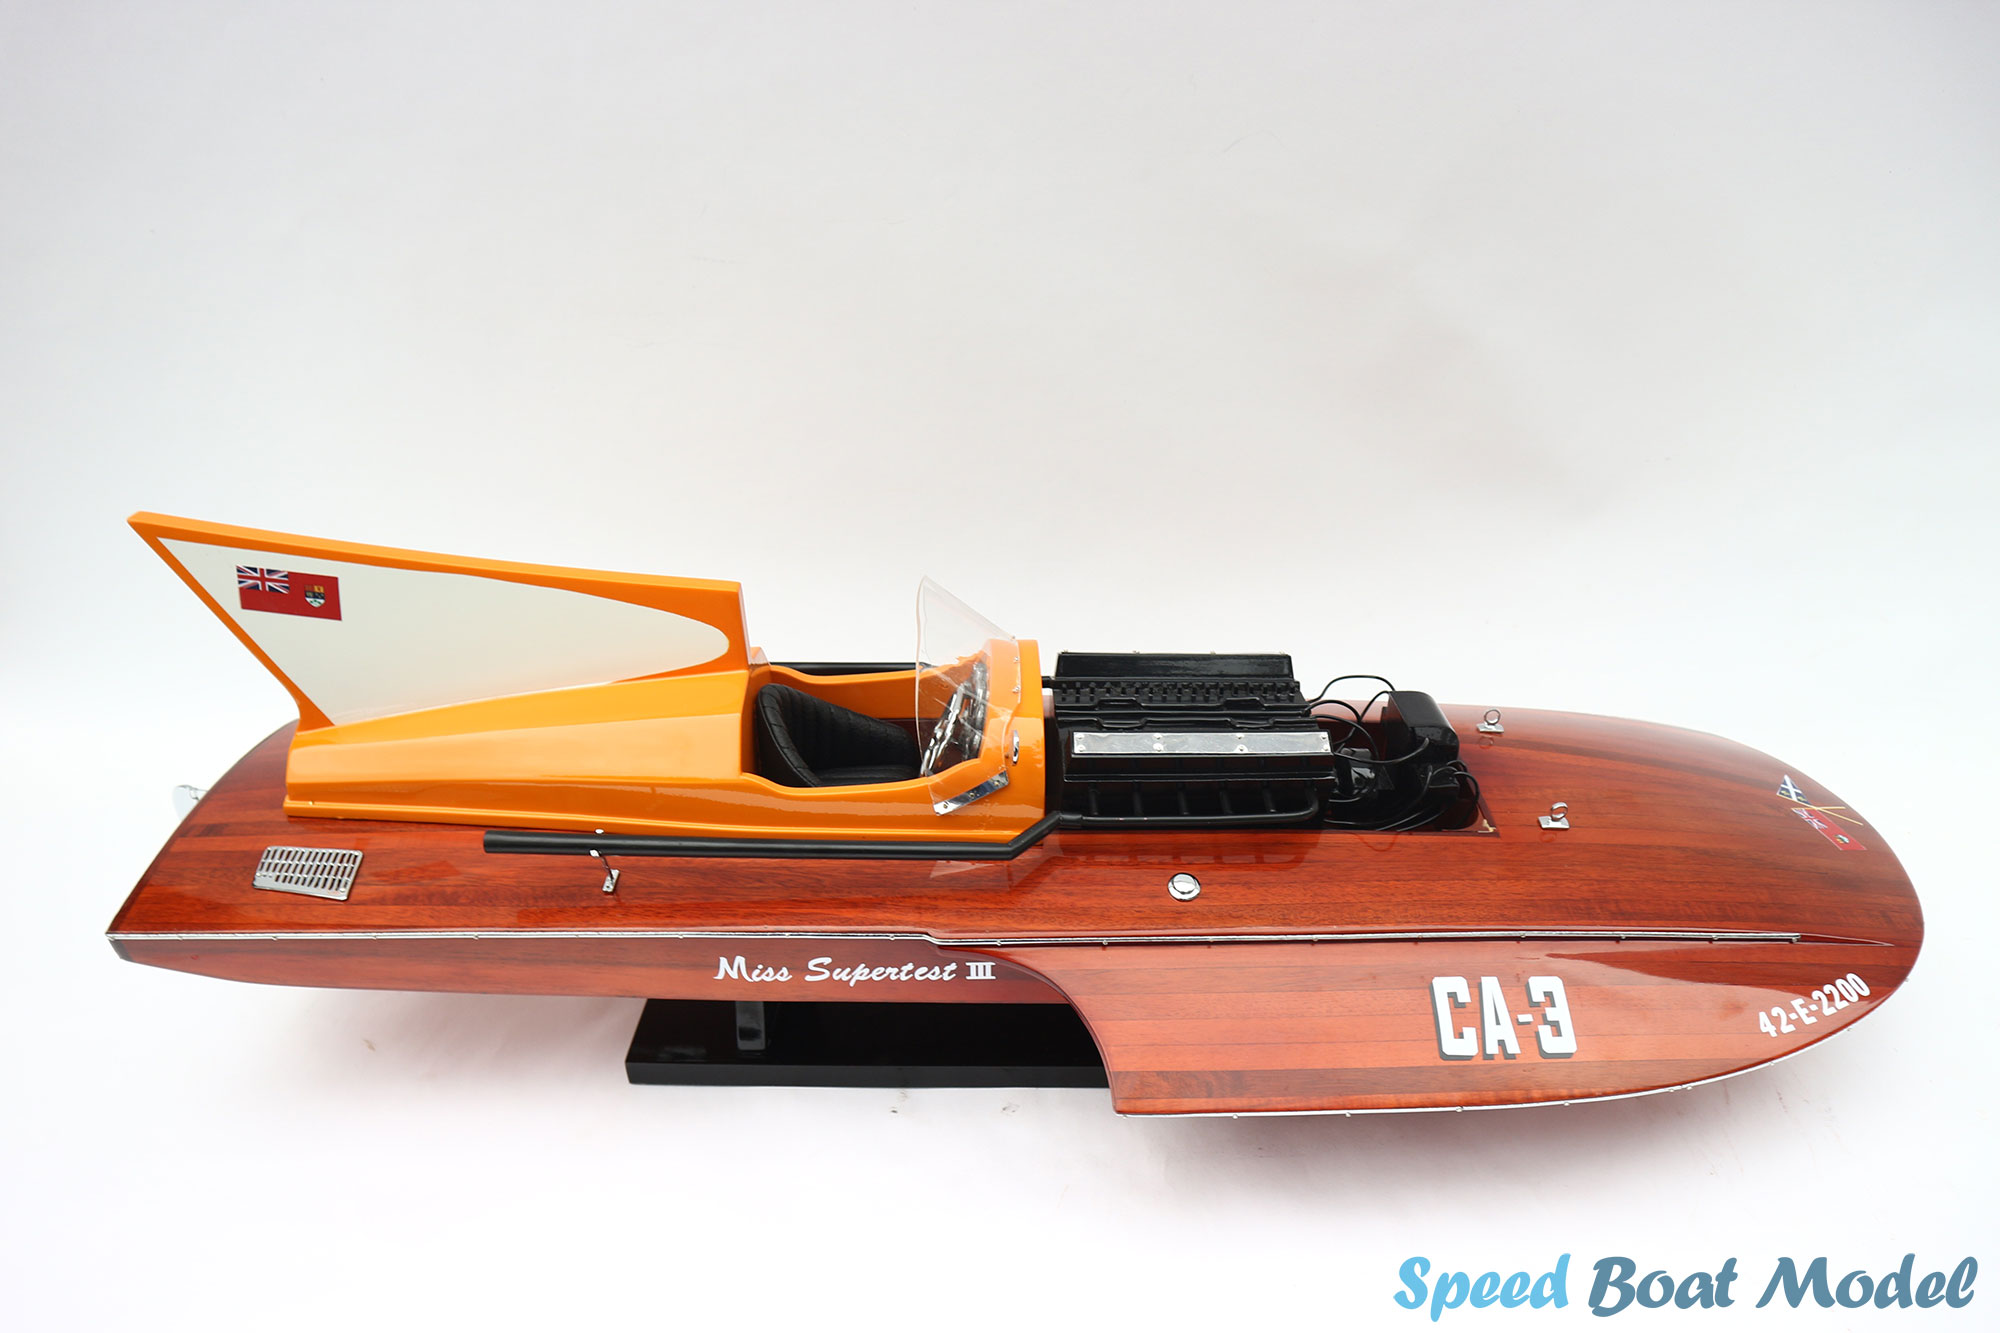 Miss Super Test Iii Speed Boat Model 30